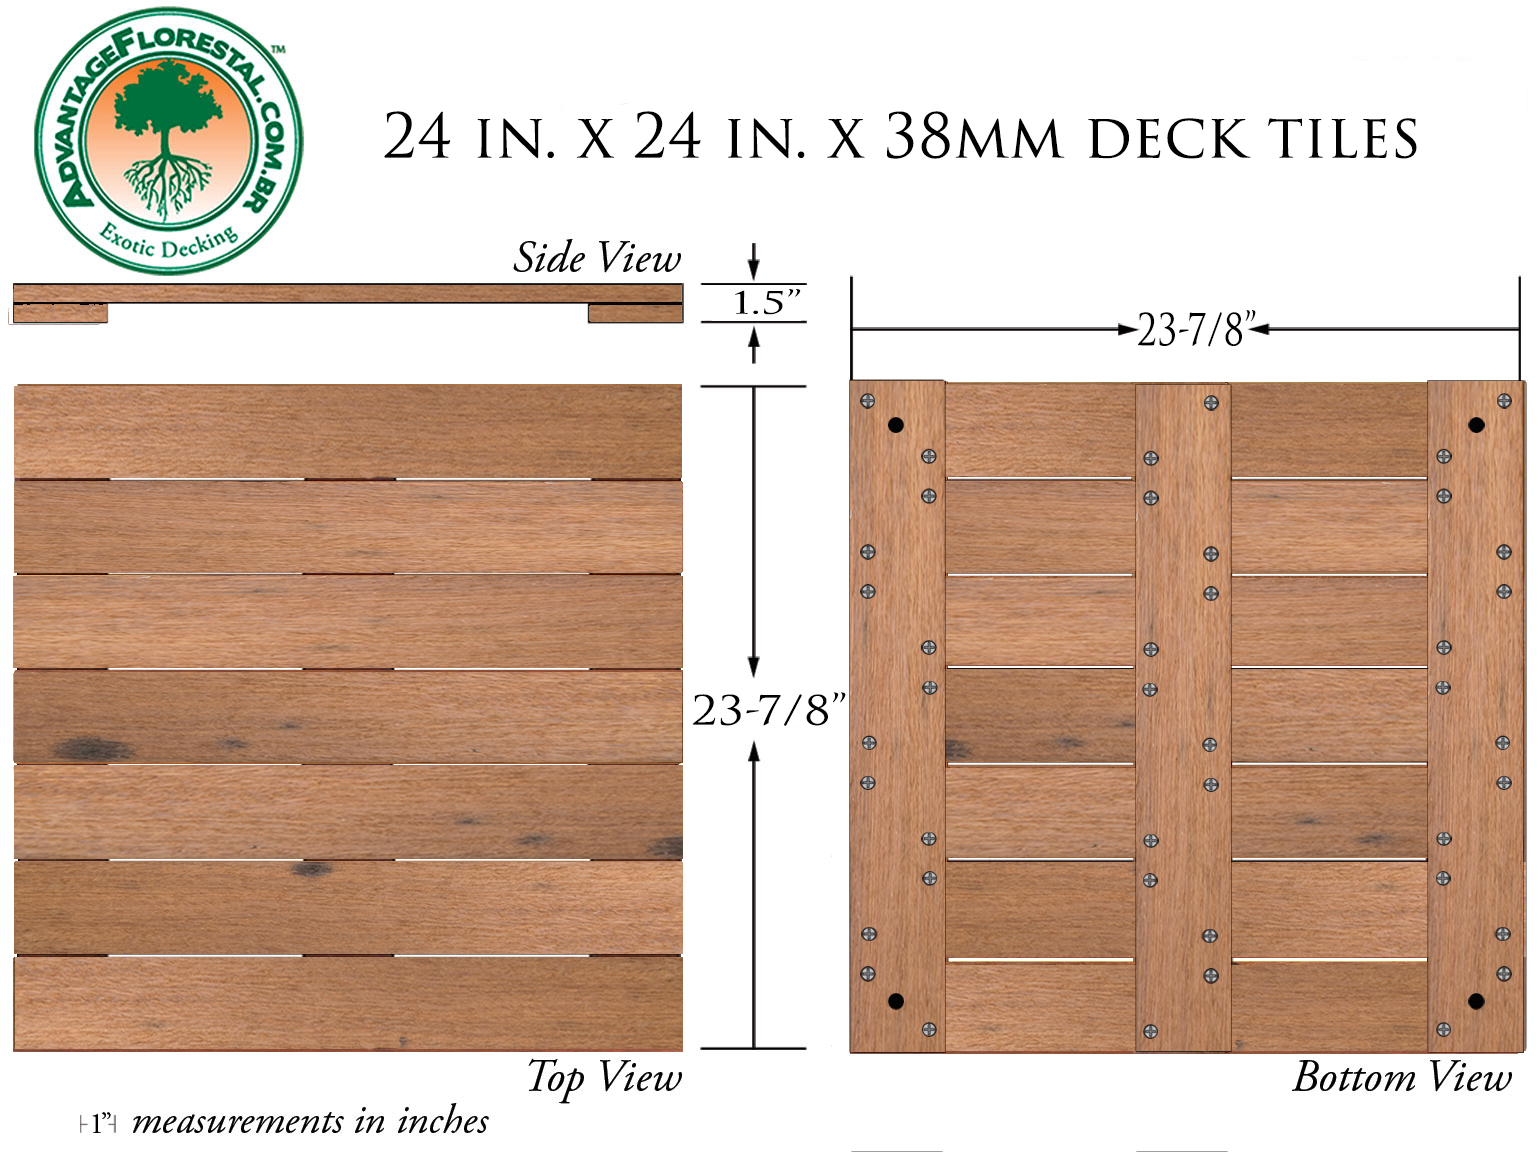 Itauba Deck Tile 24 in. x 24 in. x 38mm